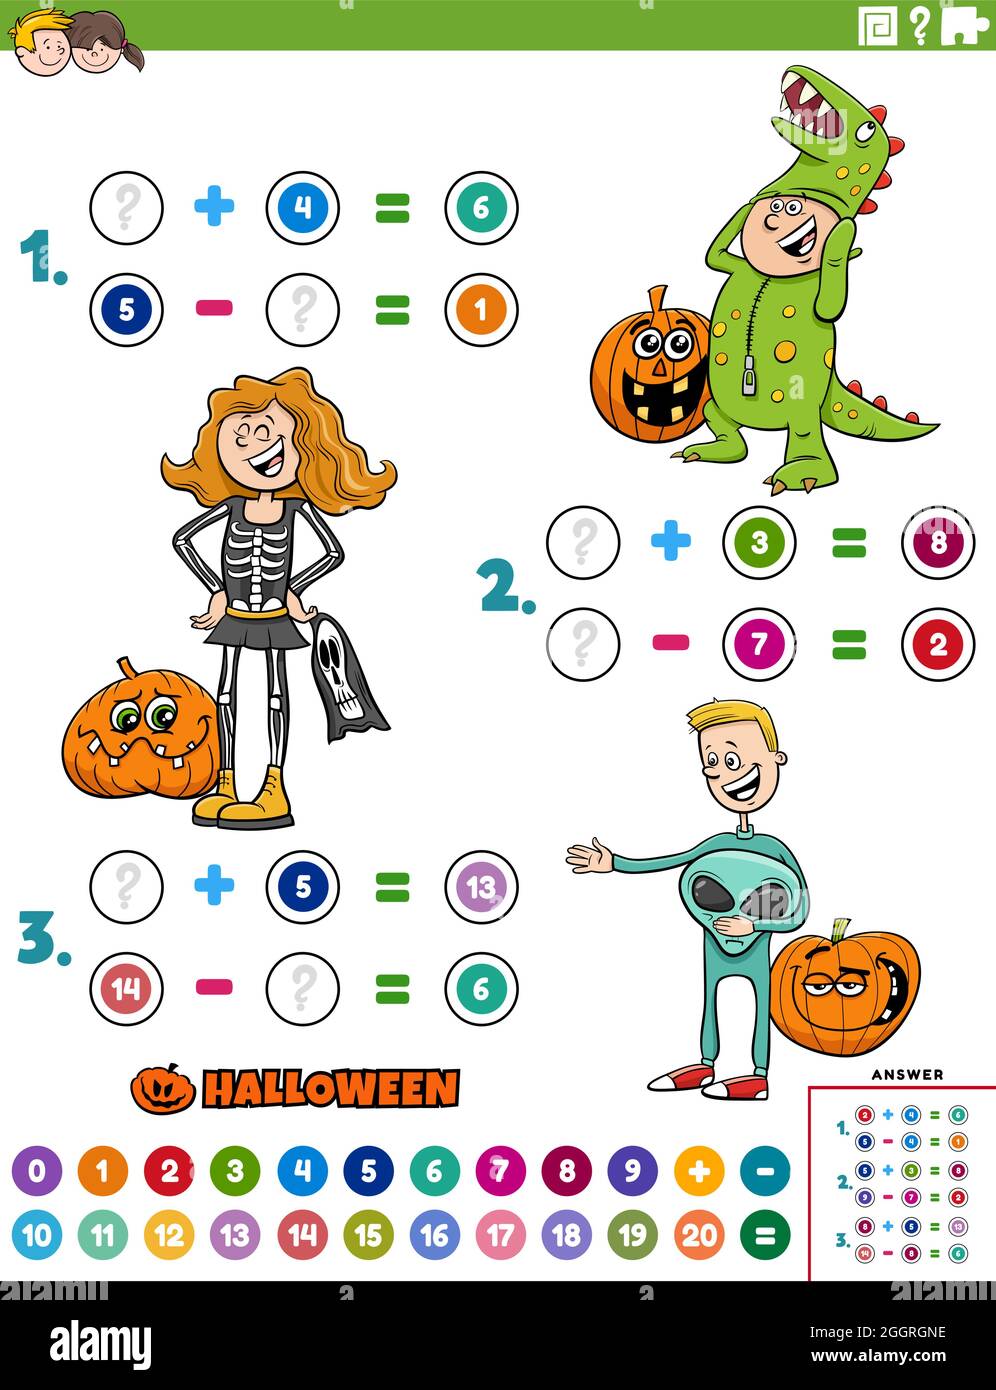 Cartoon Illustration der pädagogischen mathematischen Addition und Subtraktion Puzzle-Aufgabe mit Kindern Charaktere auf Halloween Zeit Stock Vektor